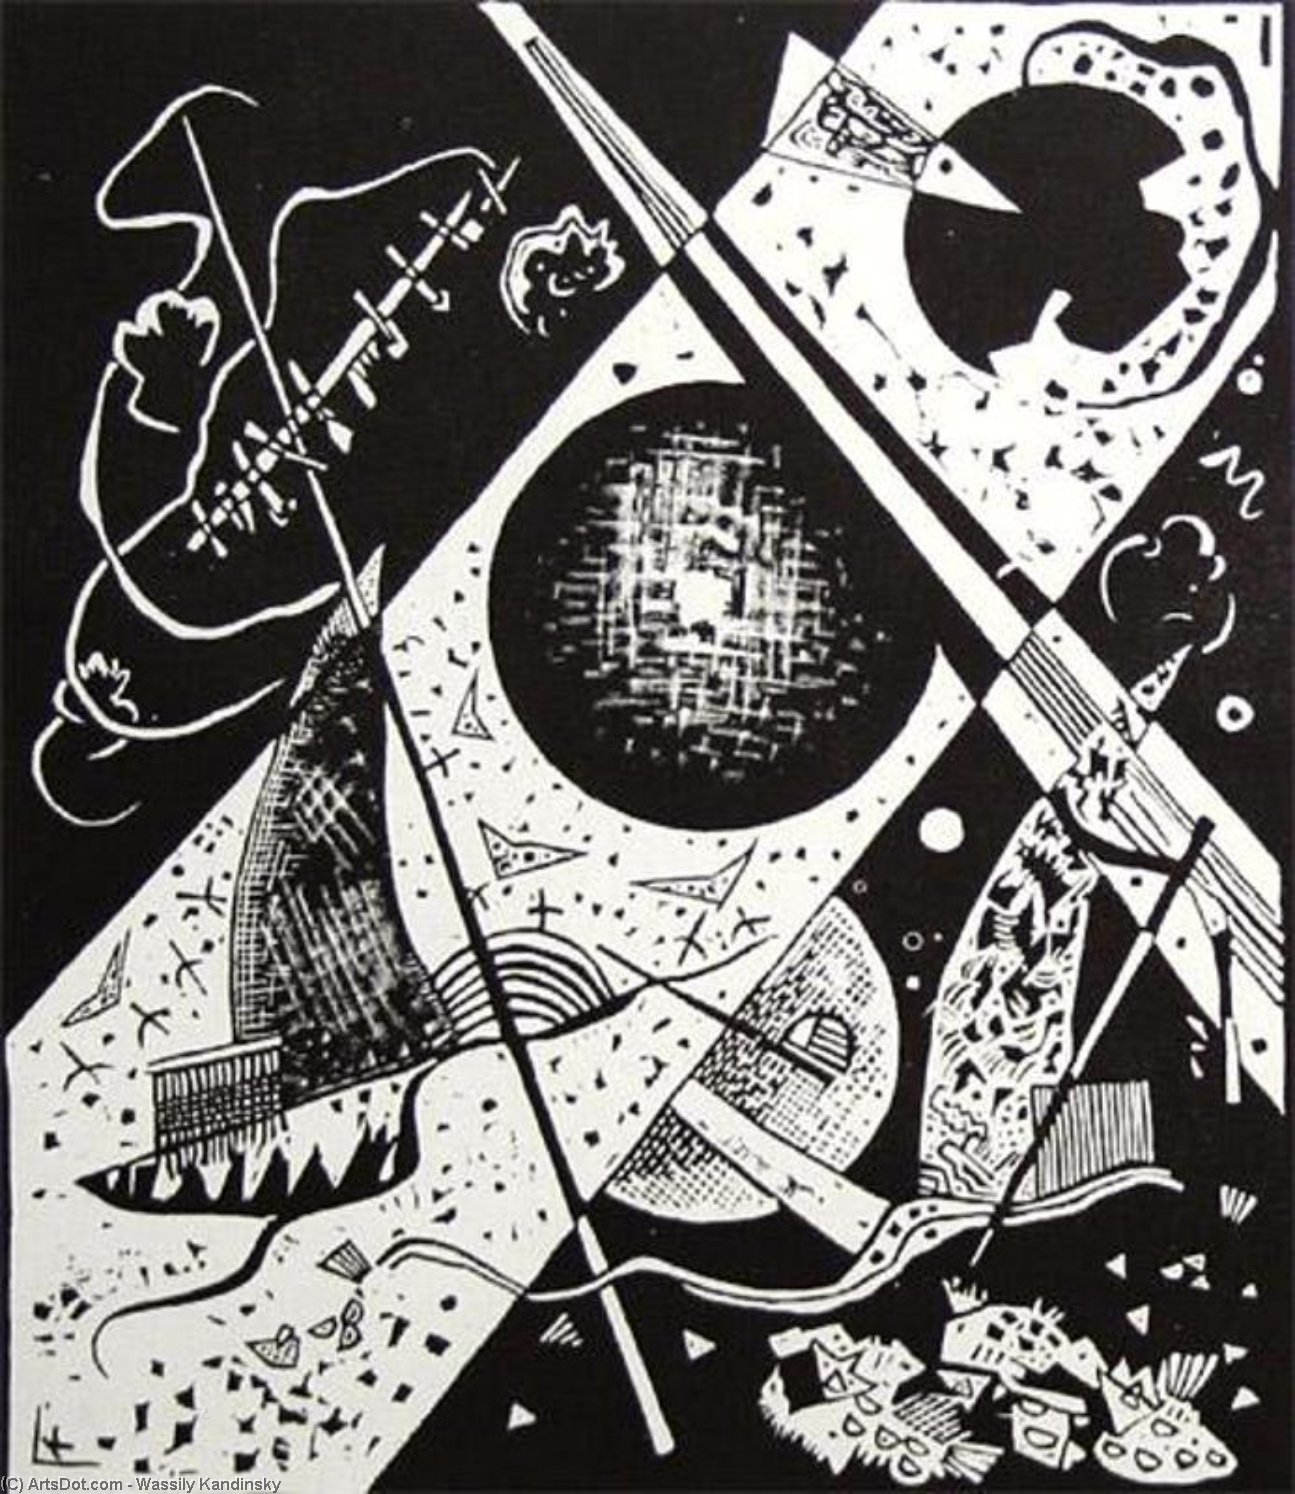 Wikoo.org - موسوعة الفنون الجميلة - اللوحة، العمل الفني Wassily Kandinsky - Small Worlds VI